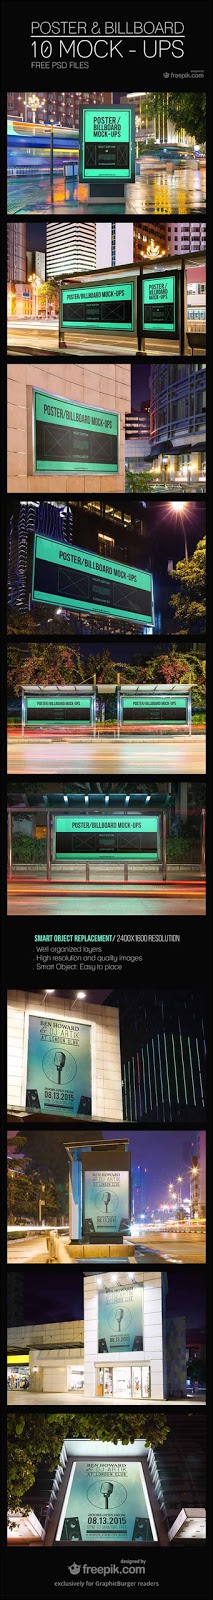  10 Urban Poster/Billboard Free PSD Mockup 10-urban-poster-billboard-free-psd-mockups-download-designrazzi